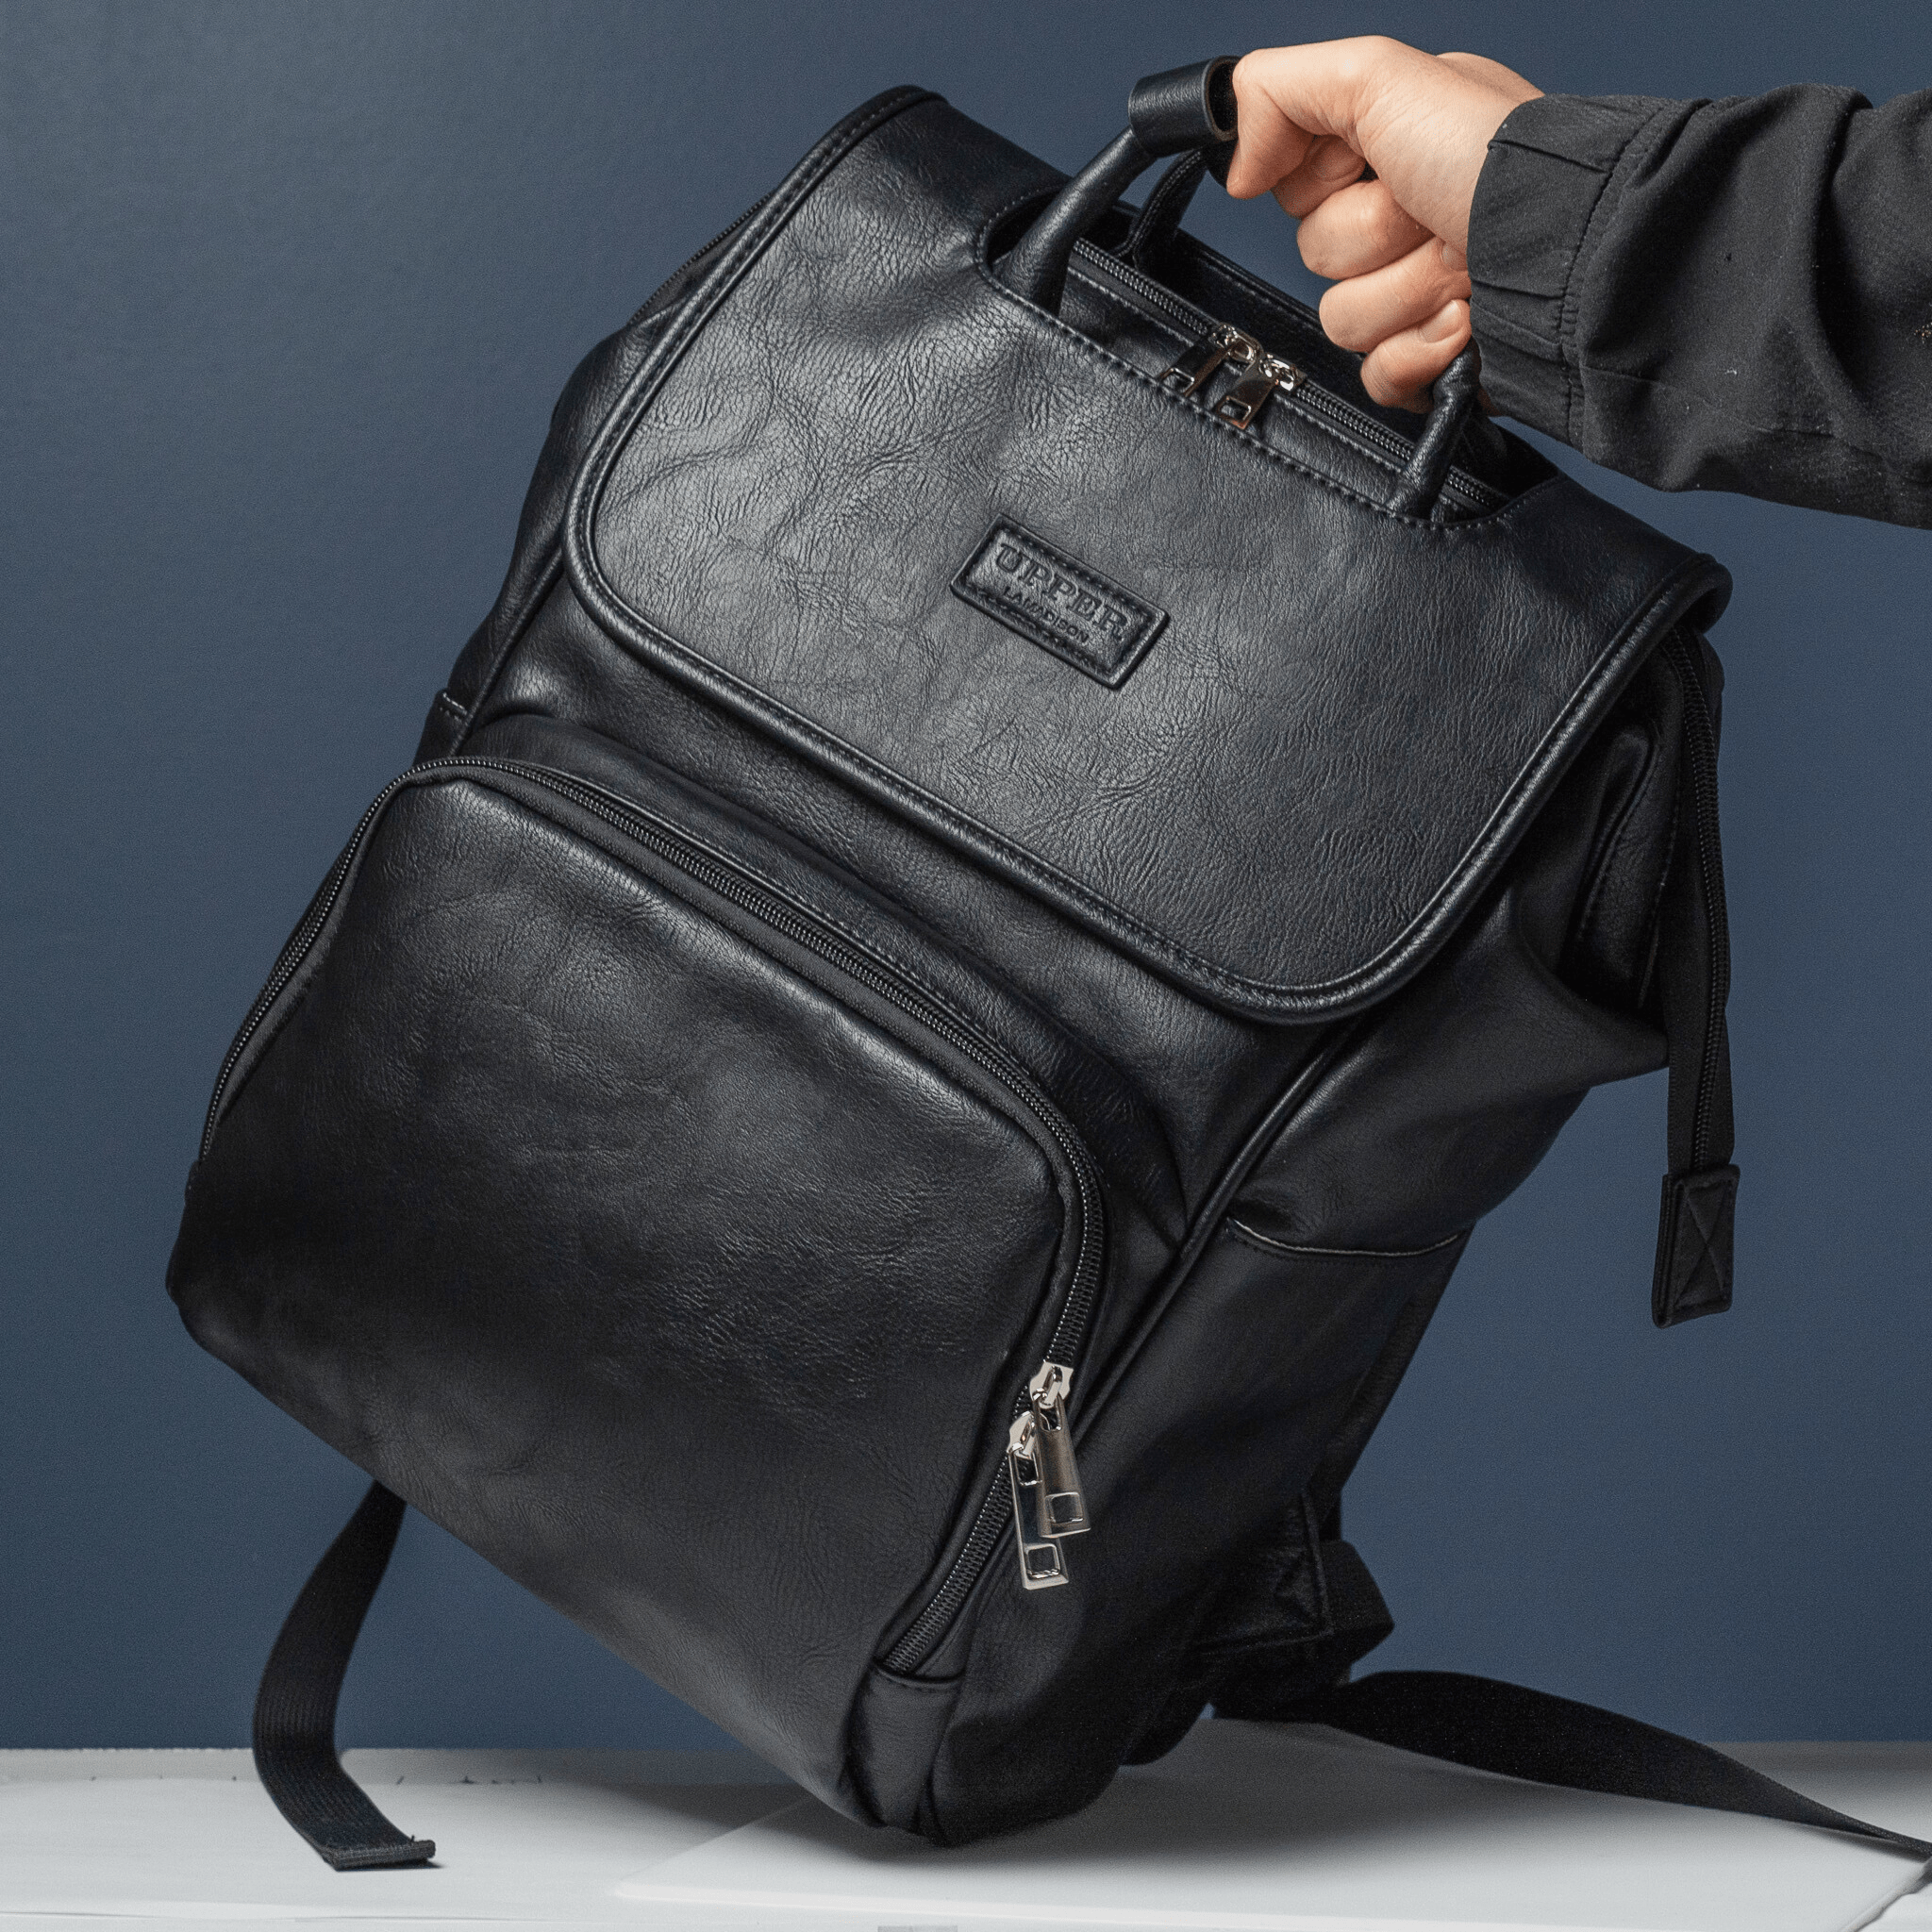 UPPER 549 - Luggage & Bags > Diaper Bags La Madison 2.0 - Elegant Vegan Leather Diaper Bag Backpack